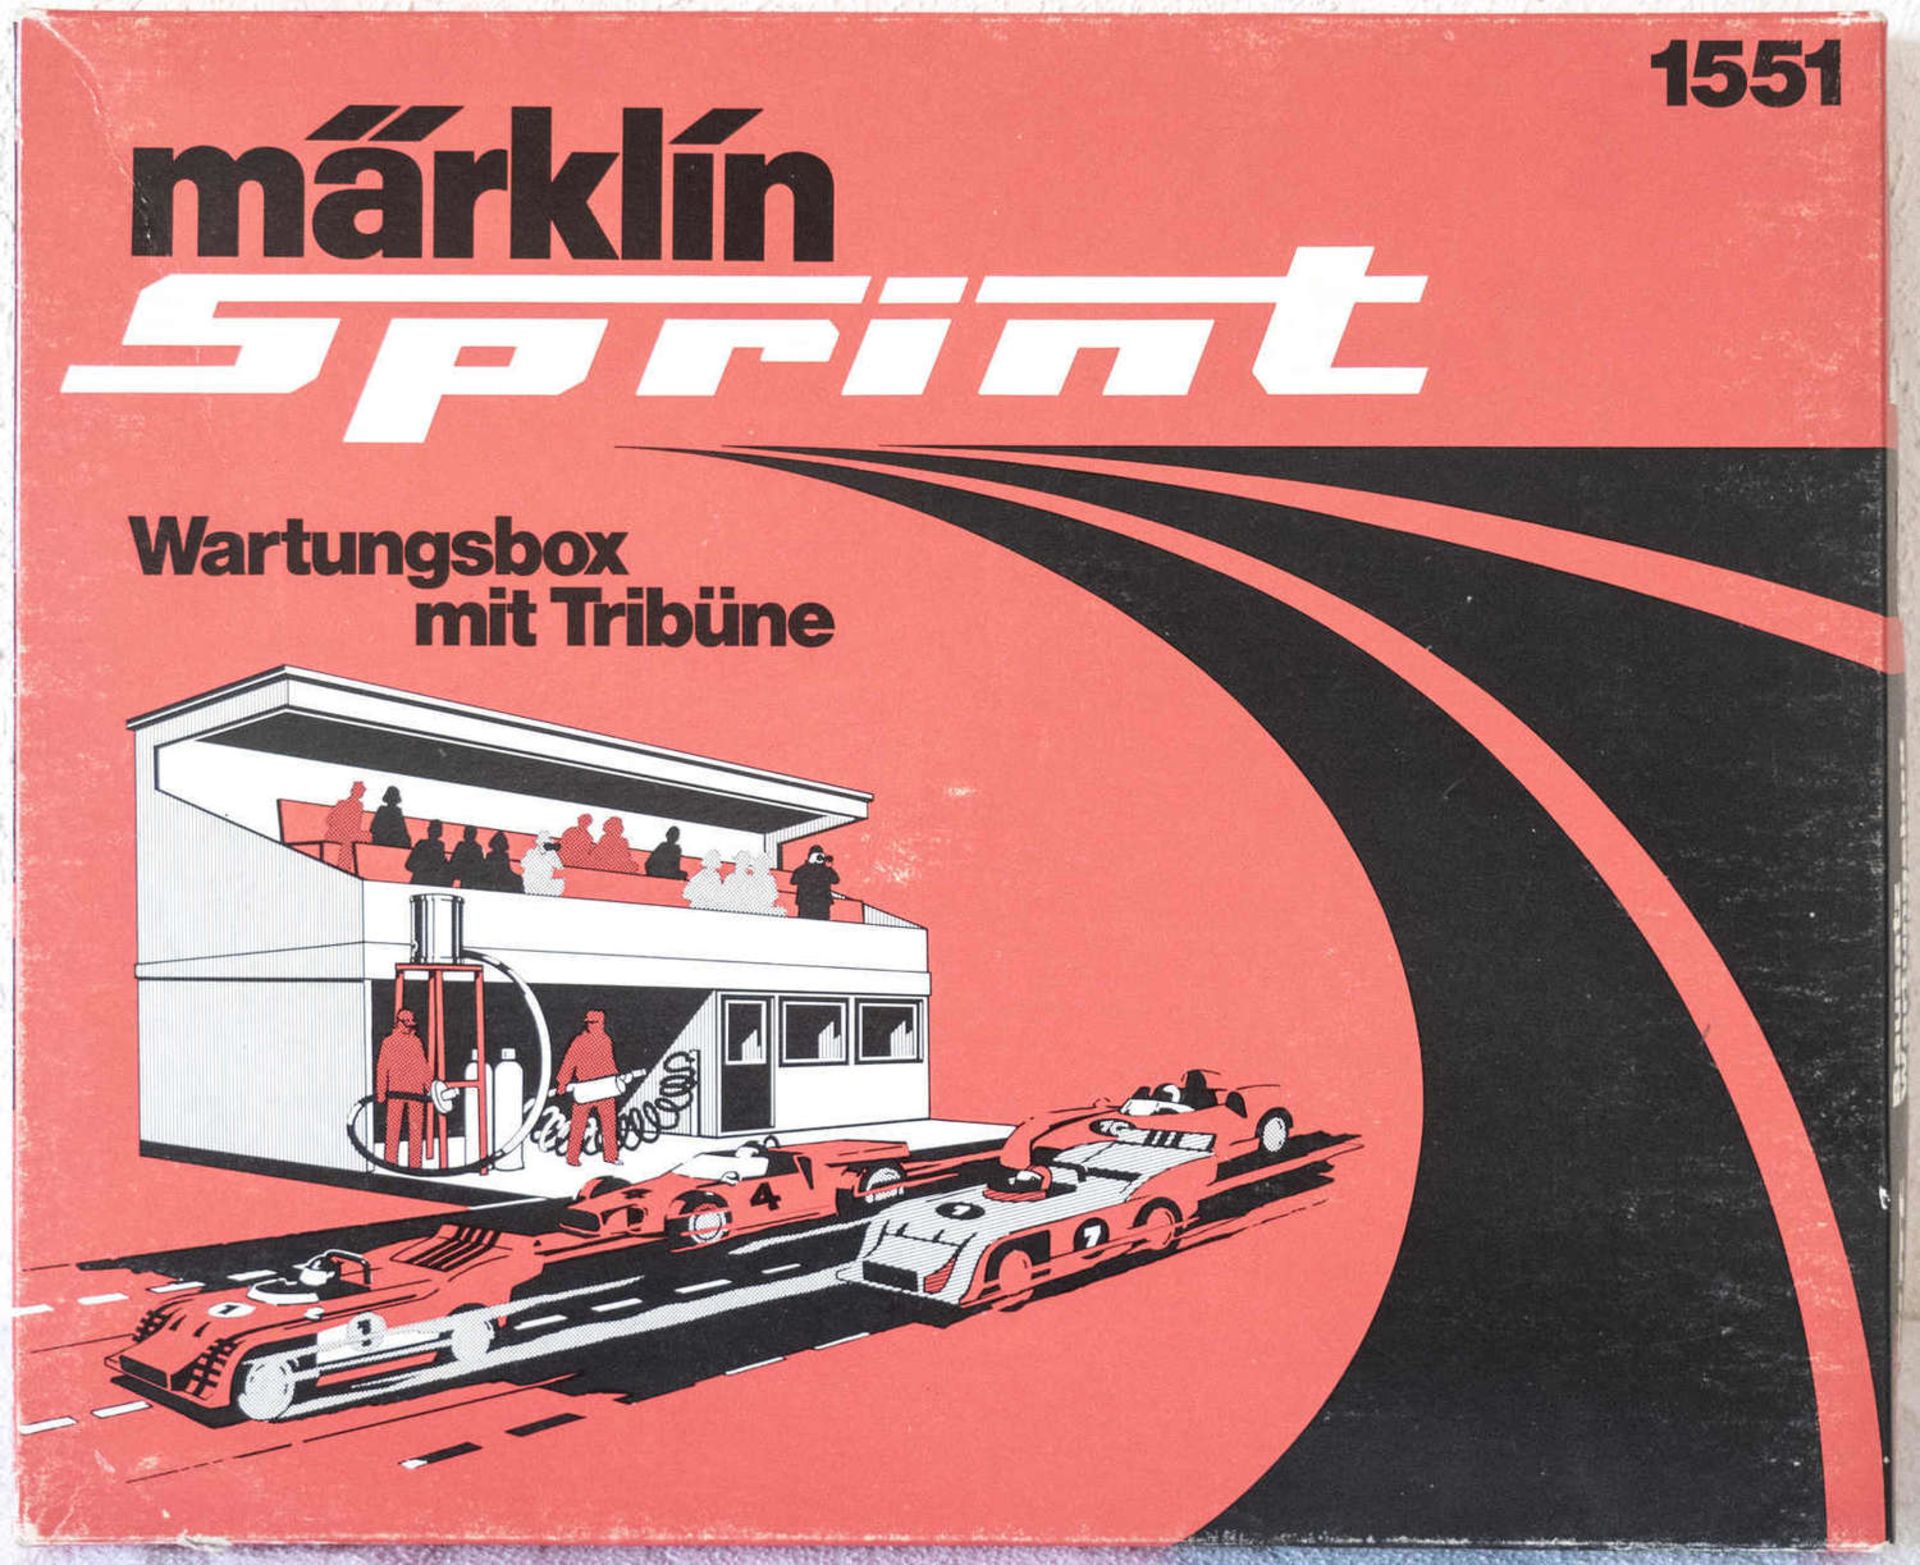 Märklin Sprint 1551 Wartungsbox mit Tribüne. Neuwertig in OVP. Ungebaut. Märklin Sprint 1551